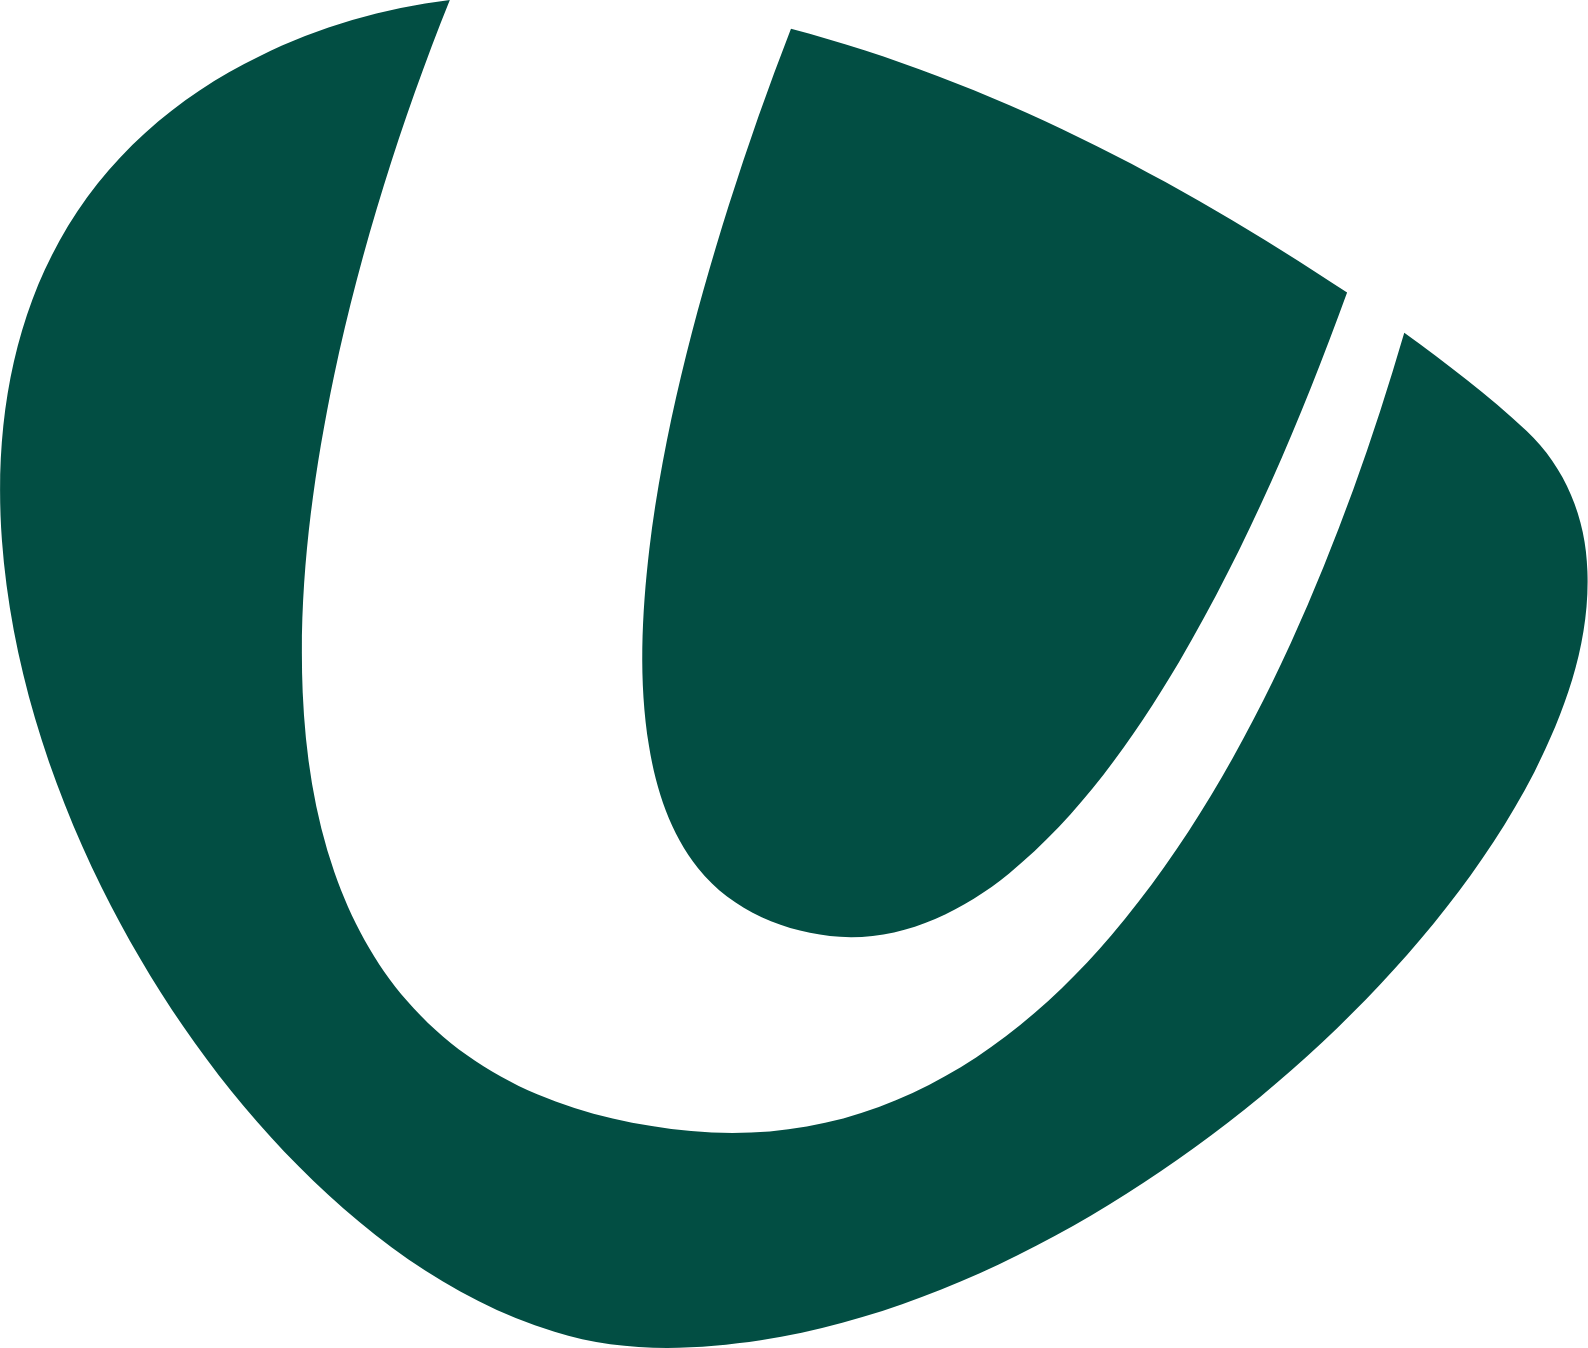 Logo de United Utilities aux formats PNG transparent et SVG vectorisé